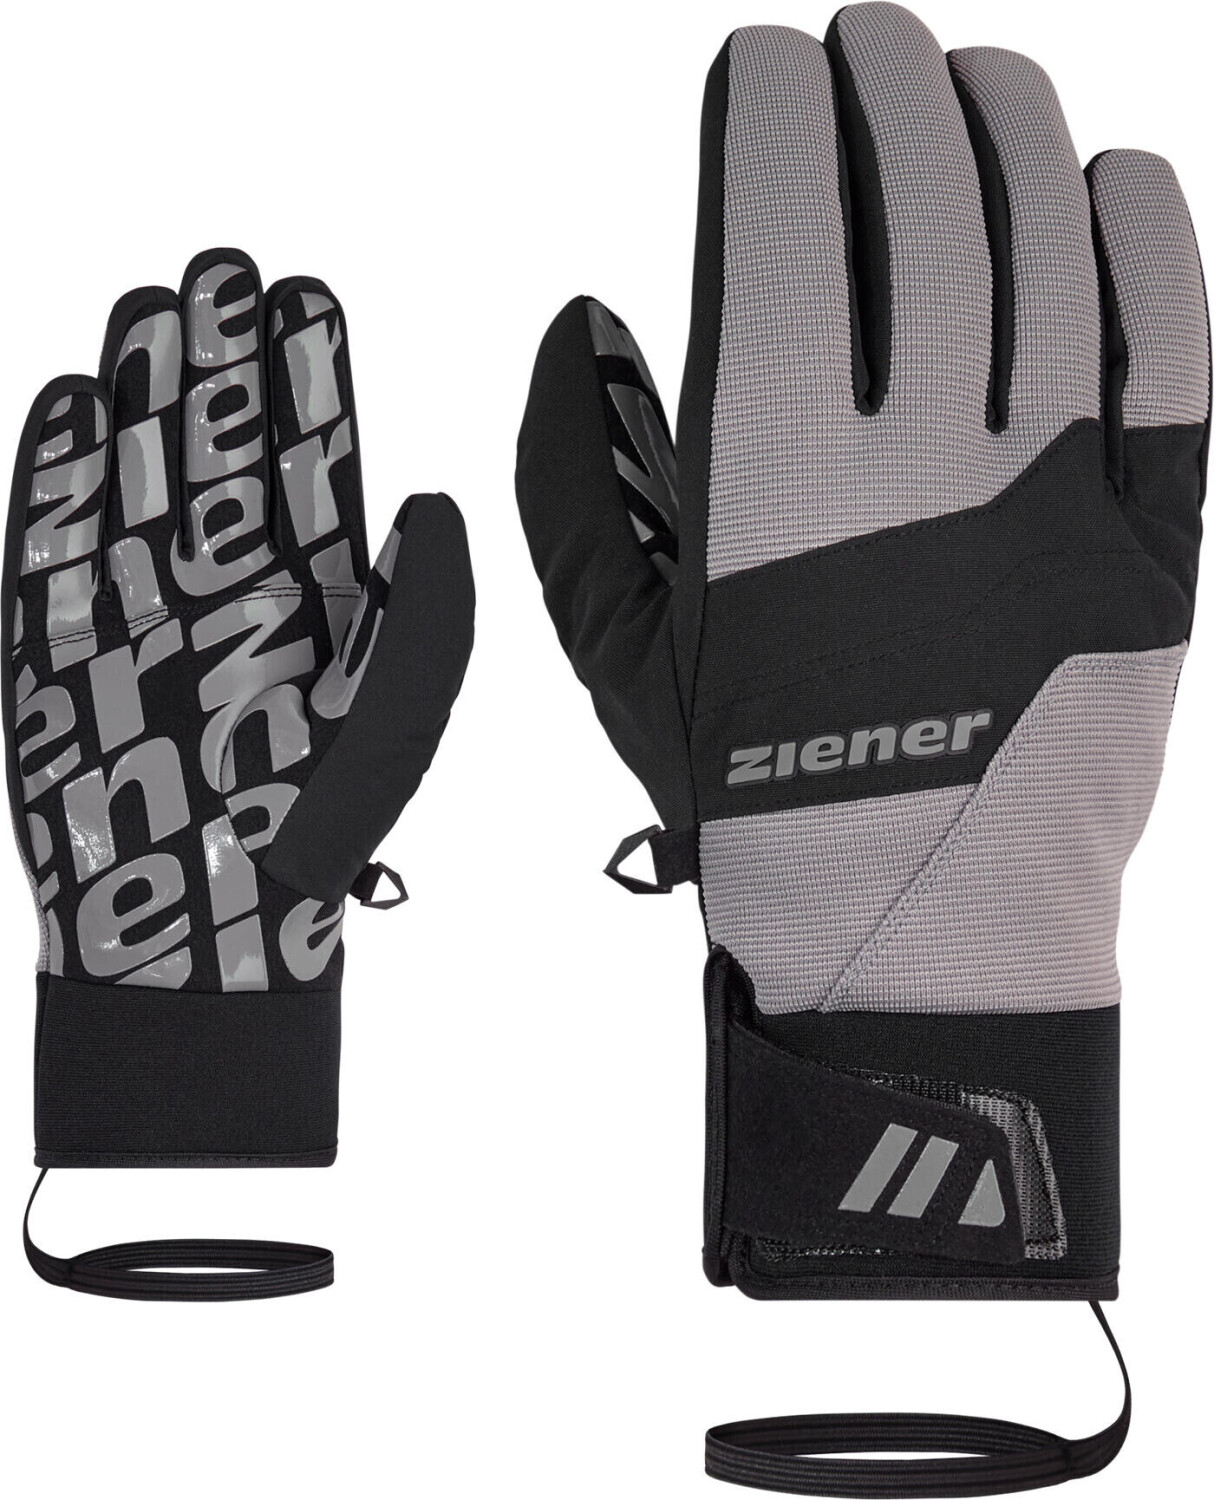 Glove | € Ziener ASR Alpine Preisvergleich 55,35 bei ab Ski Gray